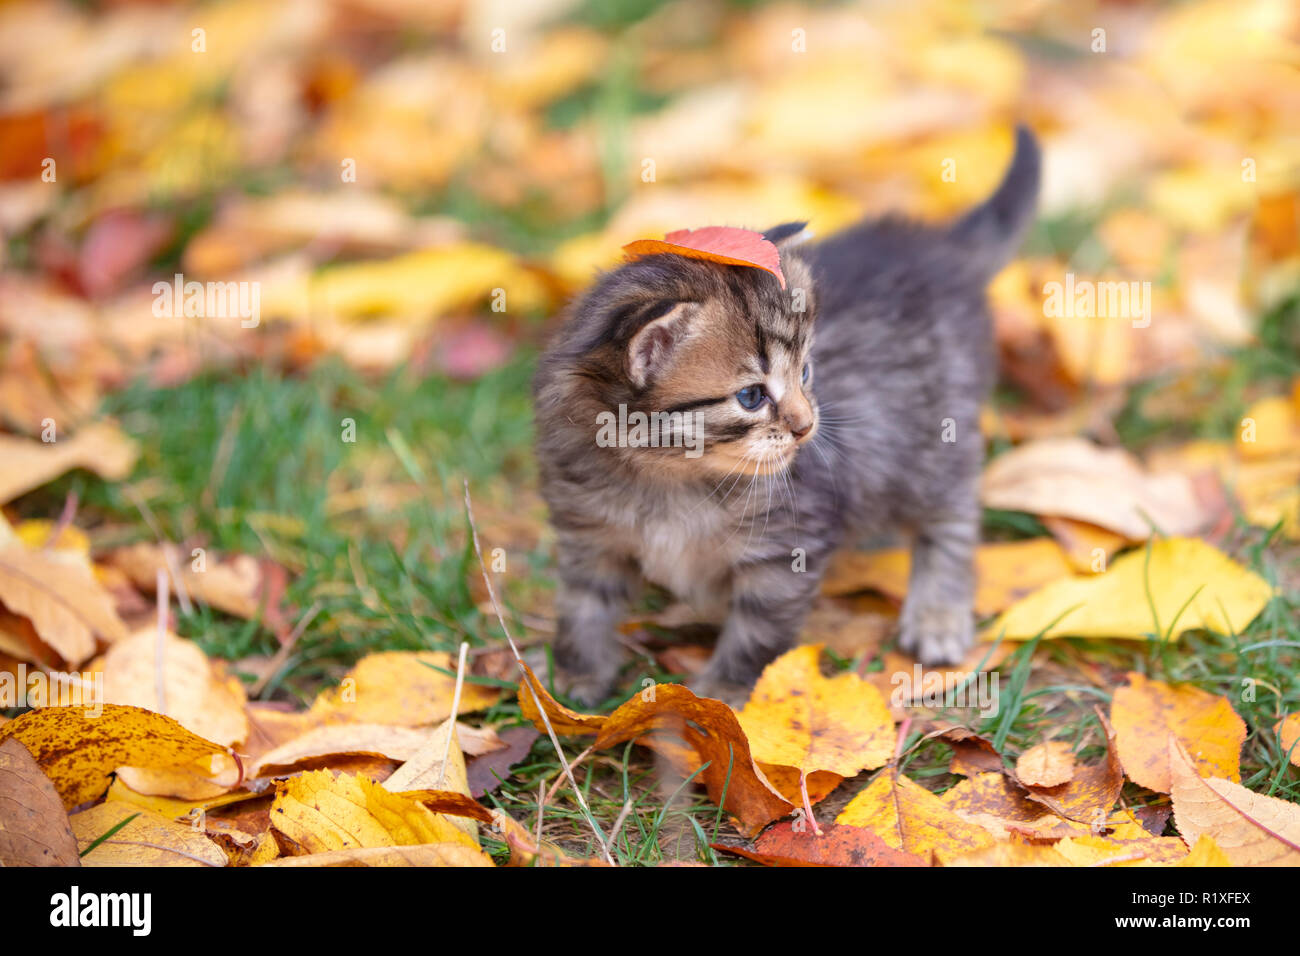 The cute striped kitten is walking on fallen leaves in the autumn garden Stock Photo